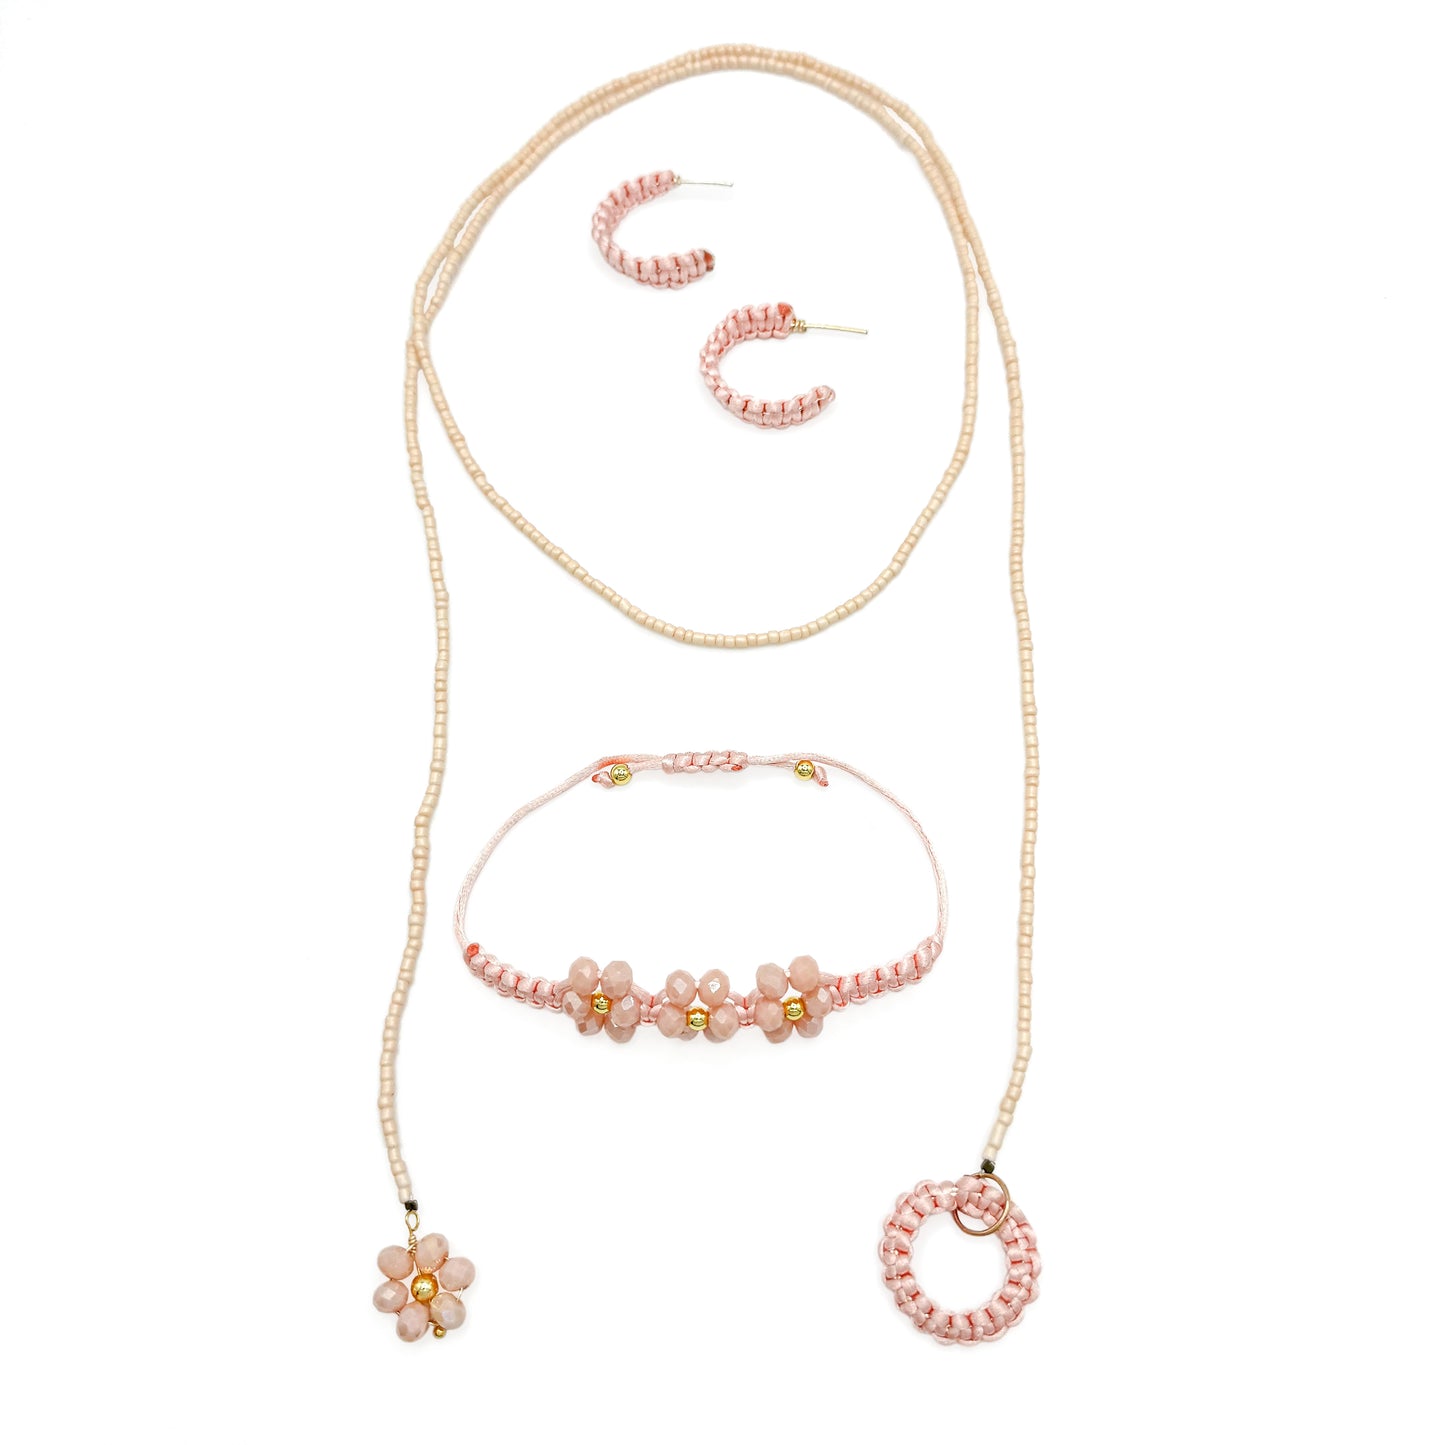 Peach Blossom necklace